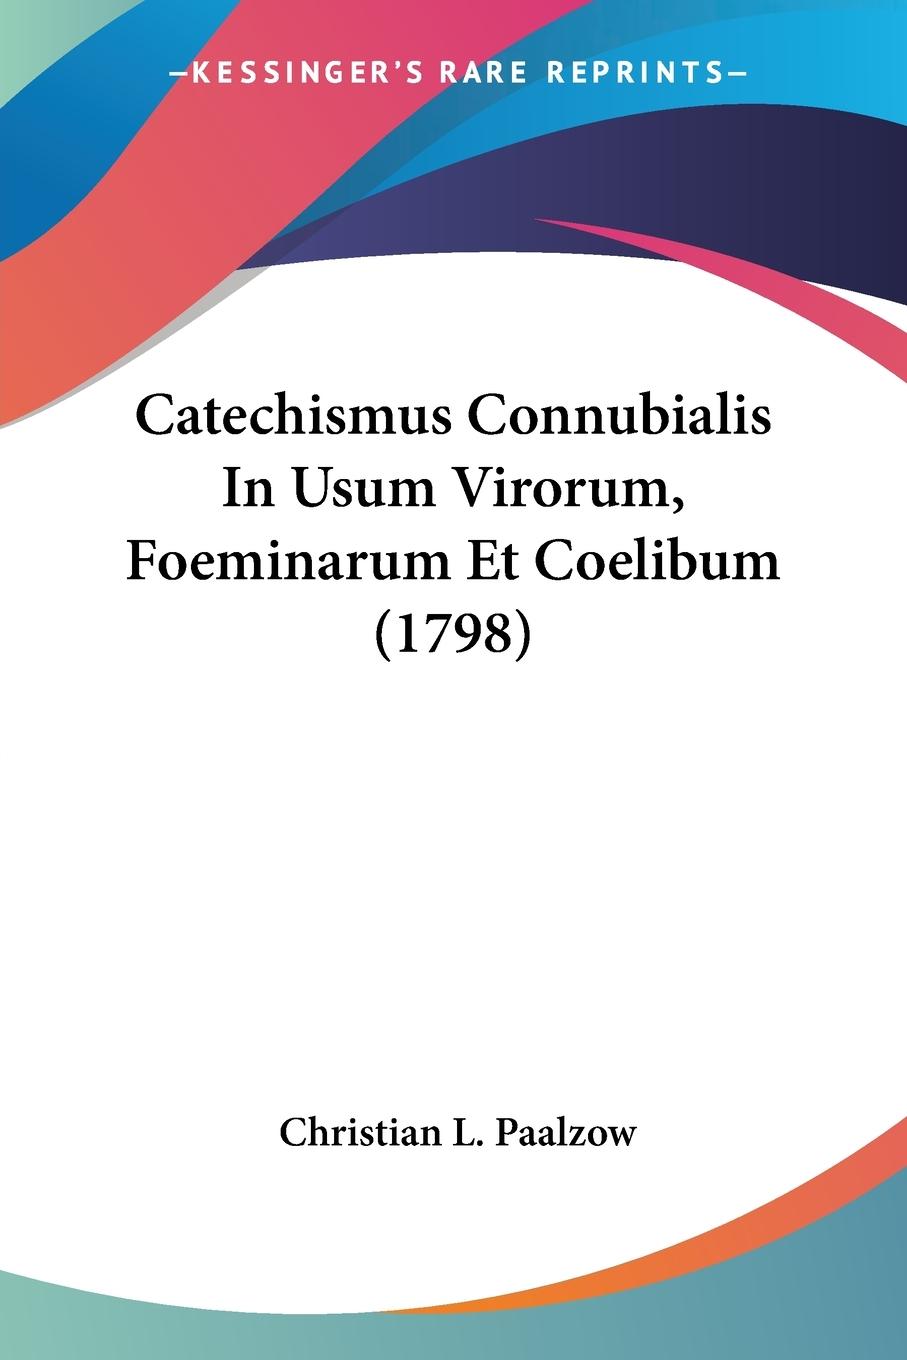 Catechismus Connubialis In Usum Virorum, Foeminarum Et Coelibum (1798) - Paalzow, Christian L.